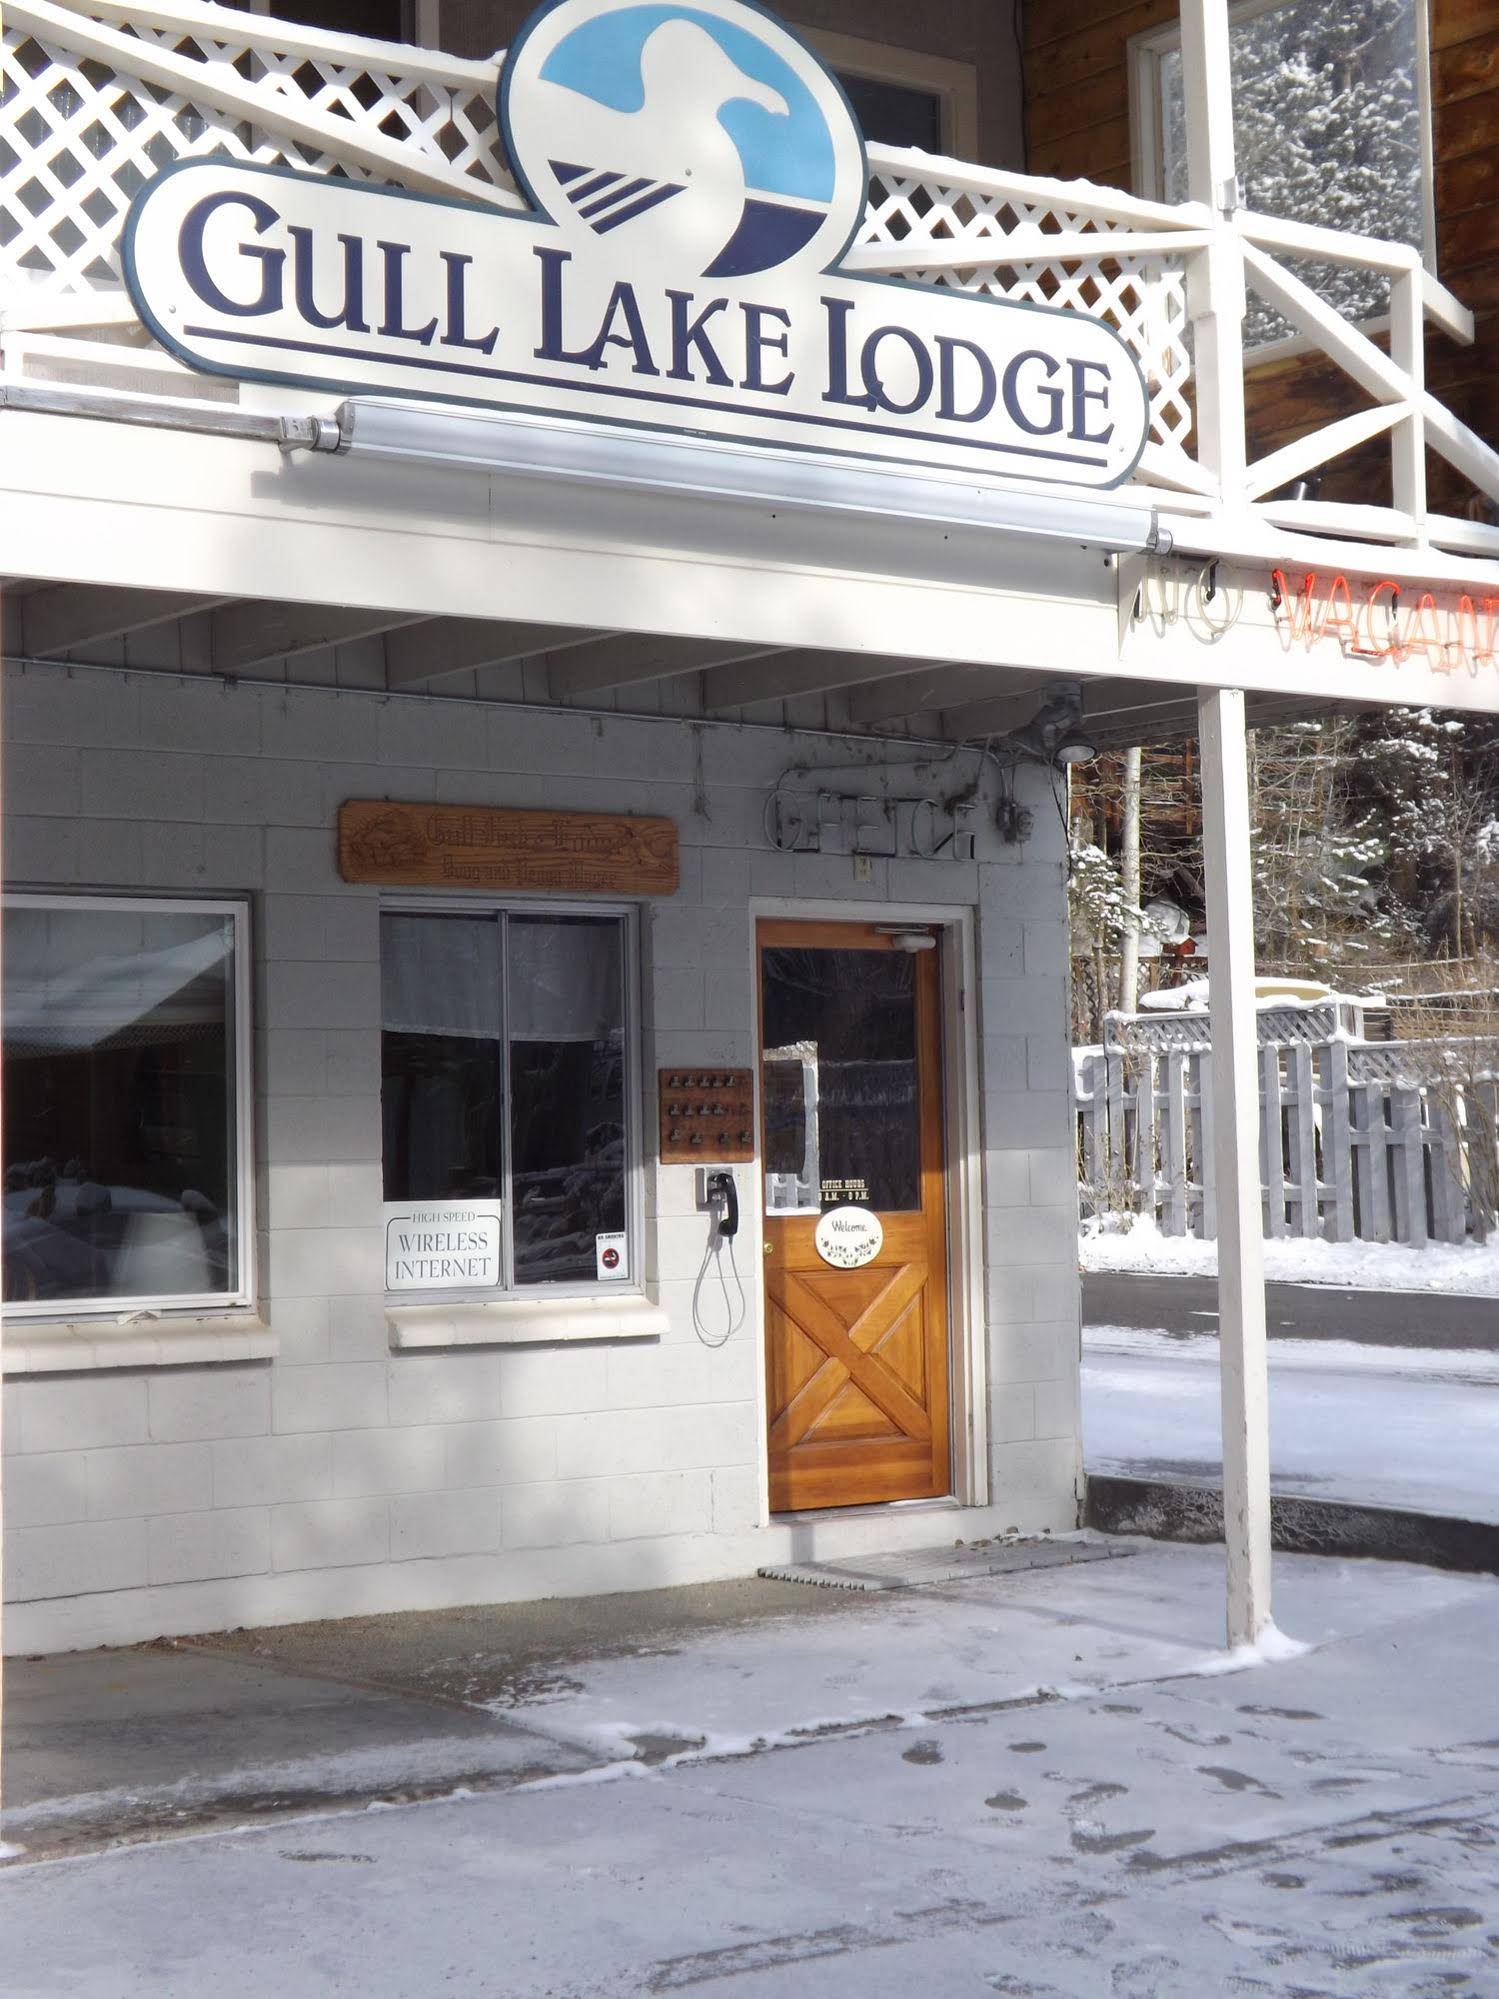 Gull Lake Lodge